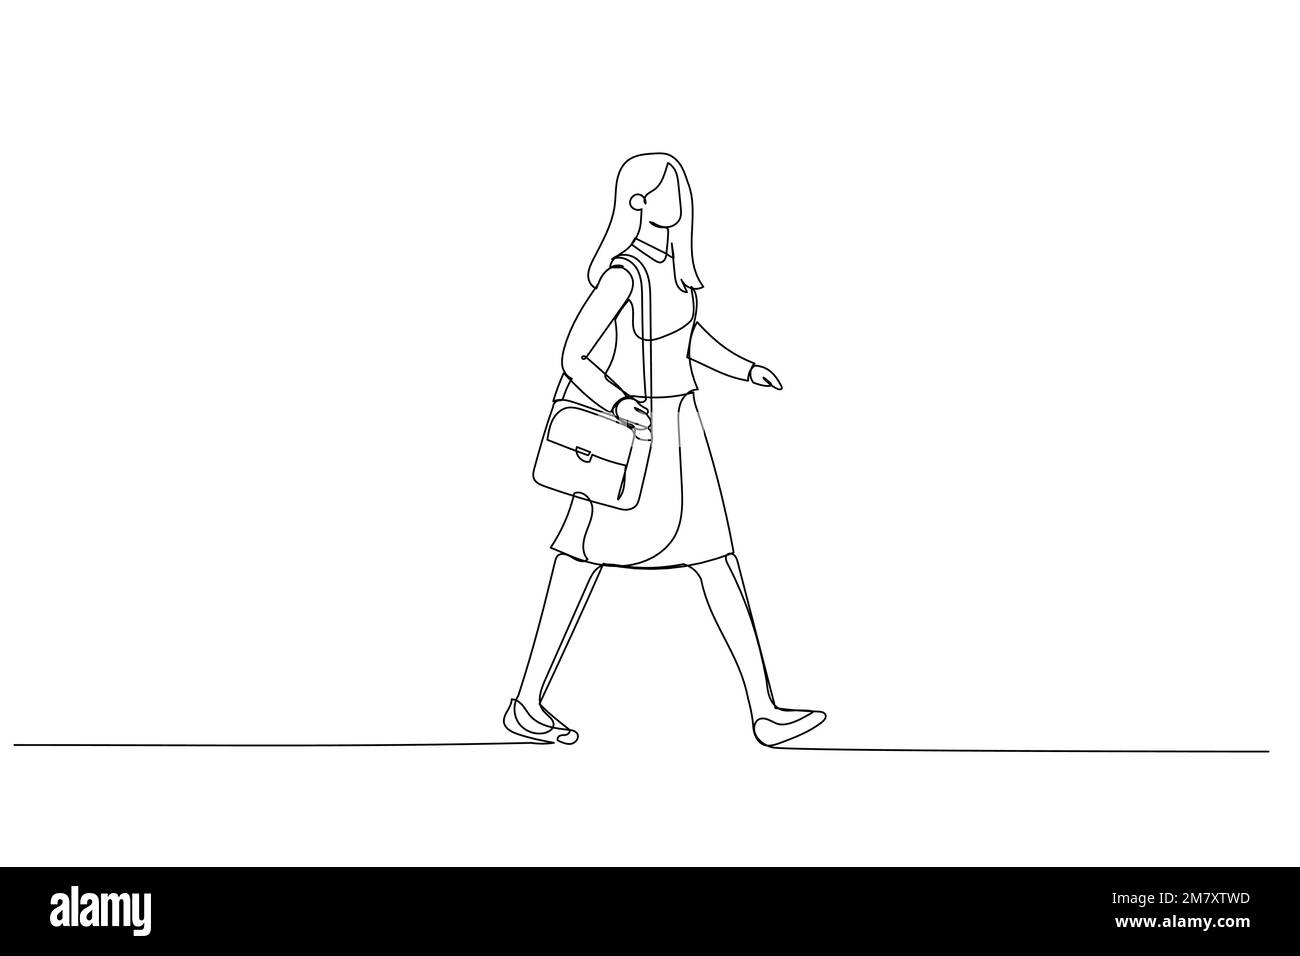 Abbildung einer Geschäftsfrau, die auf Geschäftsreisen eilig vorbeiläuft. Einteilige, durchgehende Strichart Stock Vektor